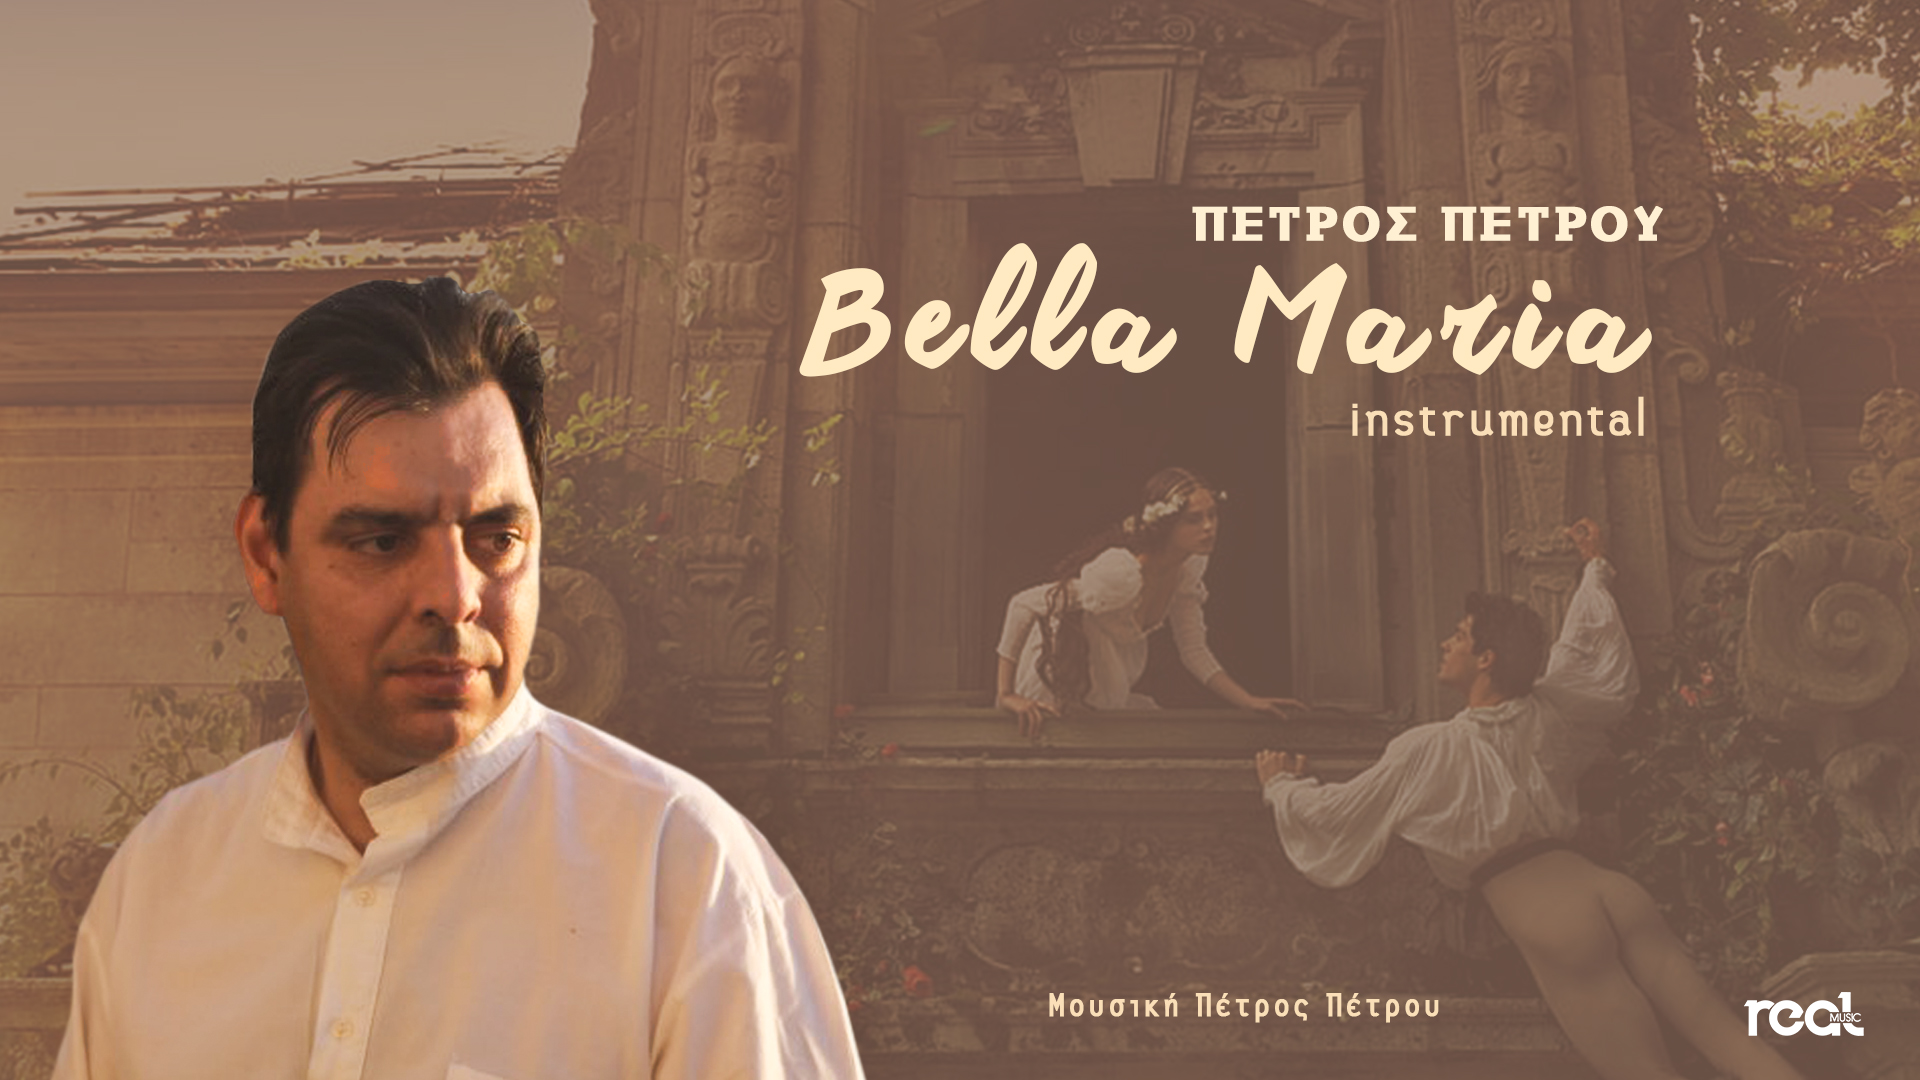 Η Real Music Greece παρουσιάζει το νέο ορχηστρικό έργο του σπουδαίου συνθέτη Petrou Petrou !